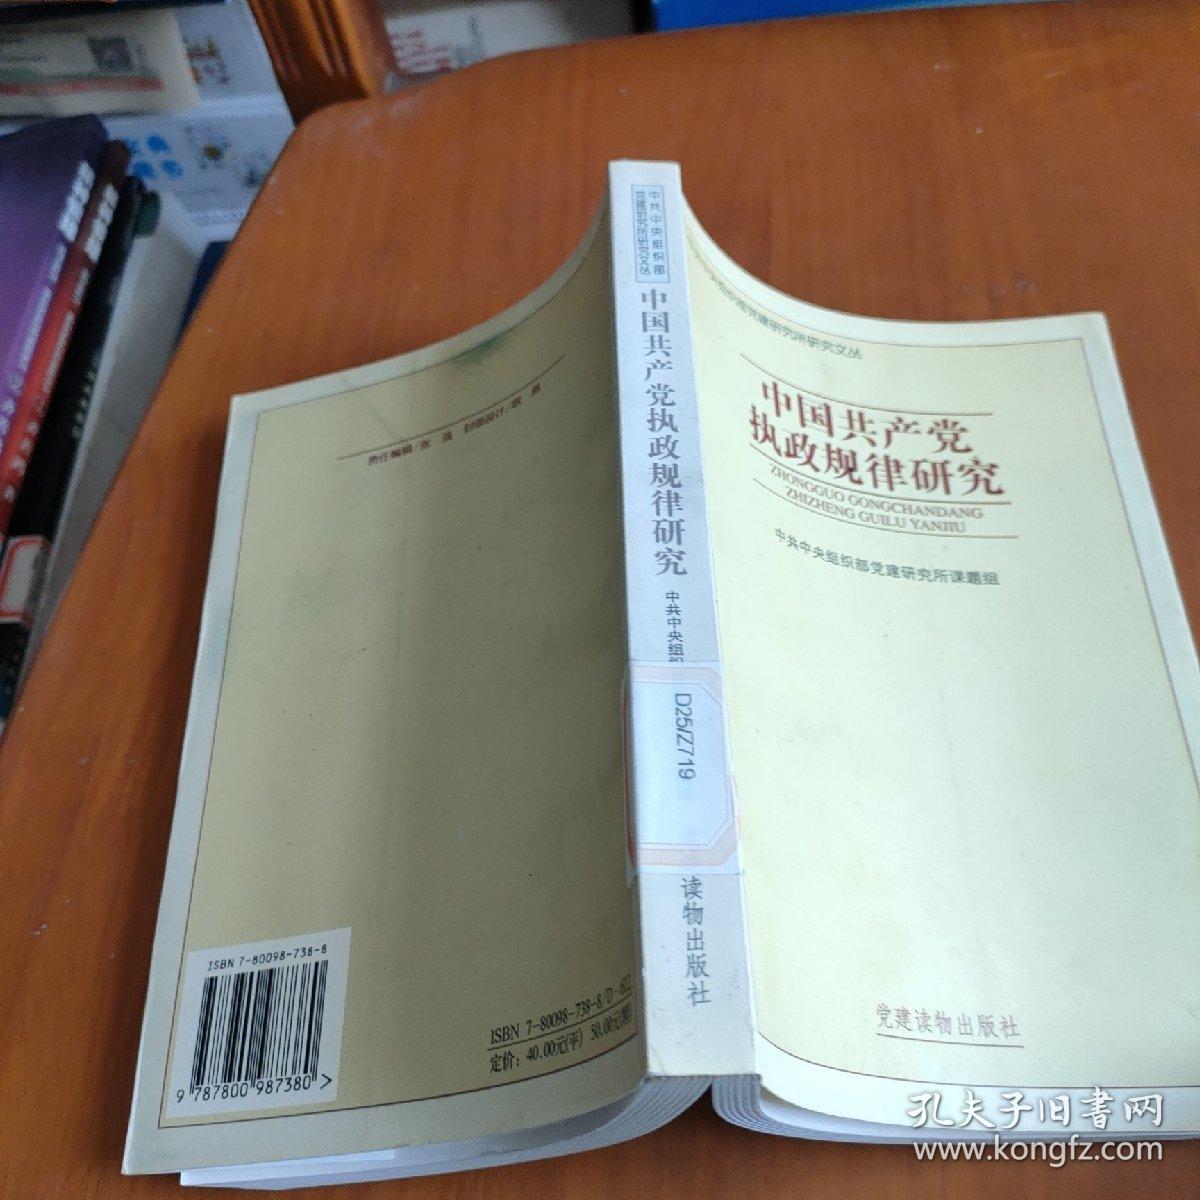 中国共产党执政规律研究